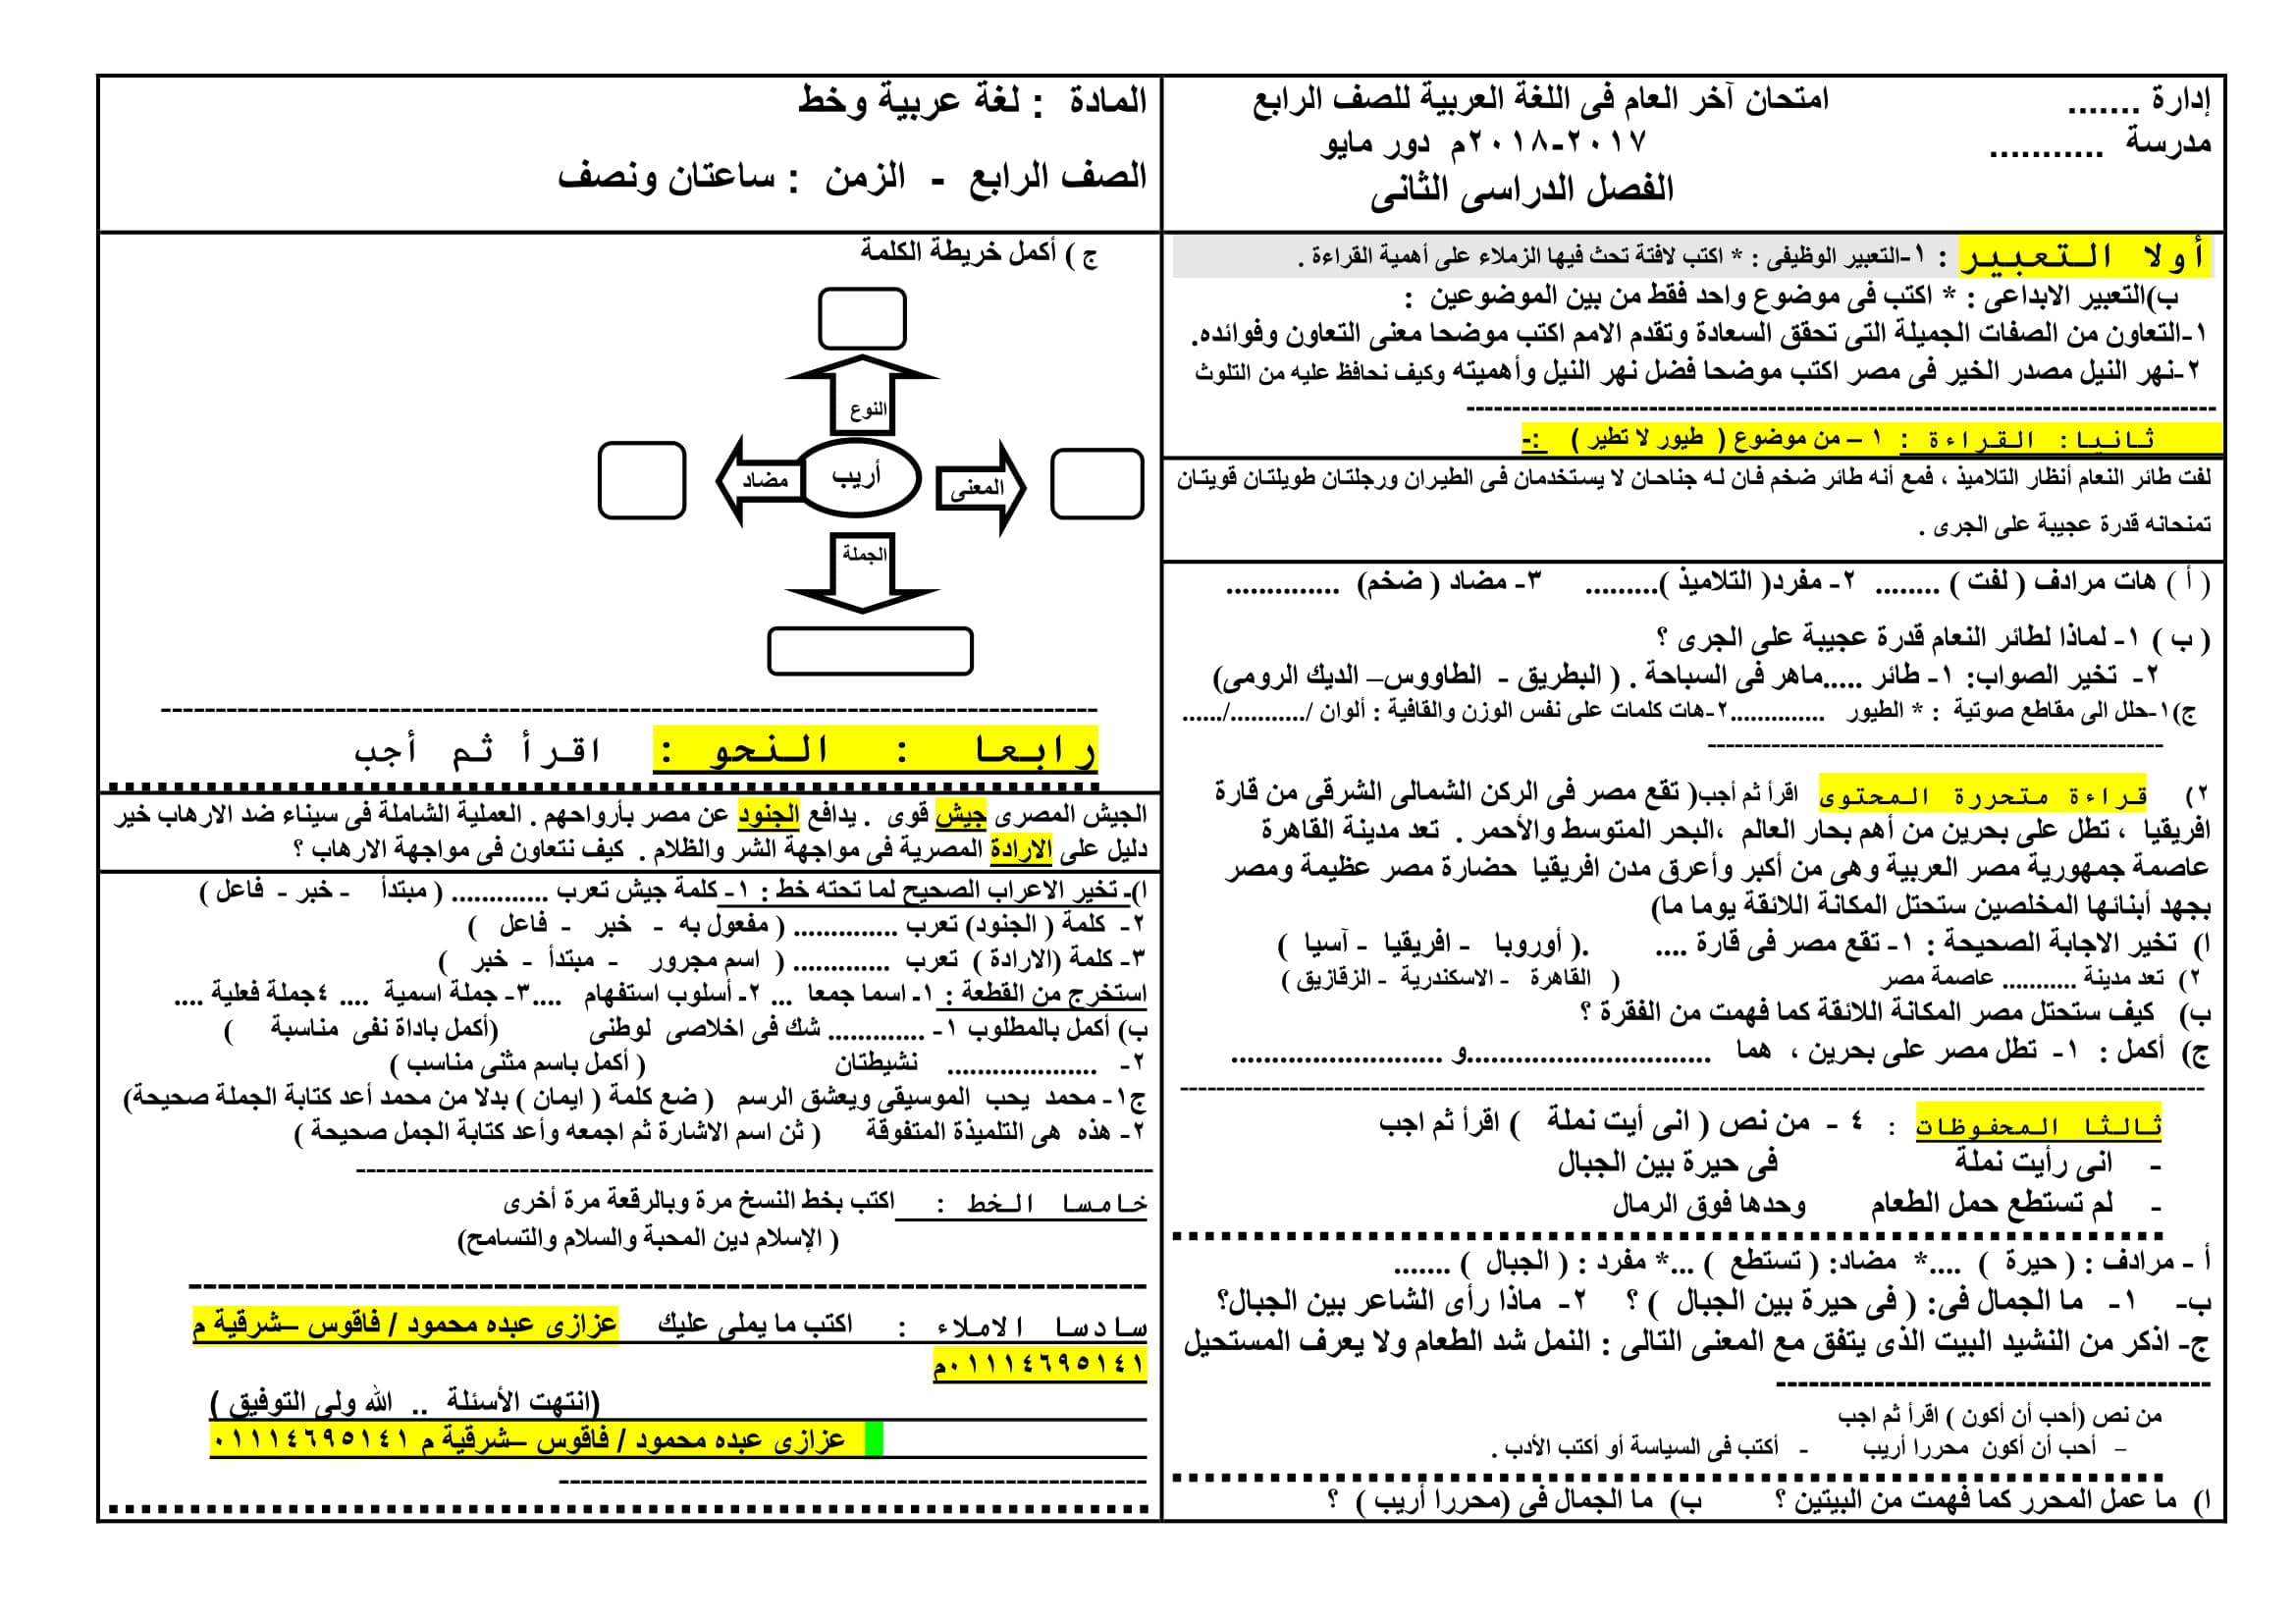 نموذج امتحان بتوزيع الدرجات فى اللغة العربية للصف الرابع الابتدائى الترم الثانى